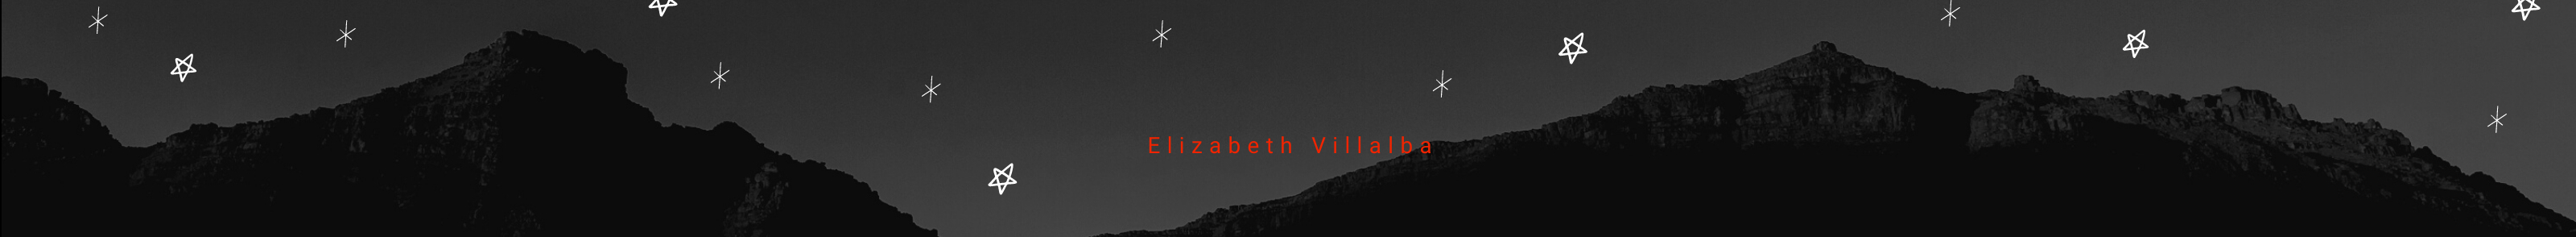 Elizabeth Villalba's profile banner